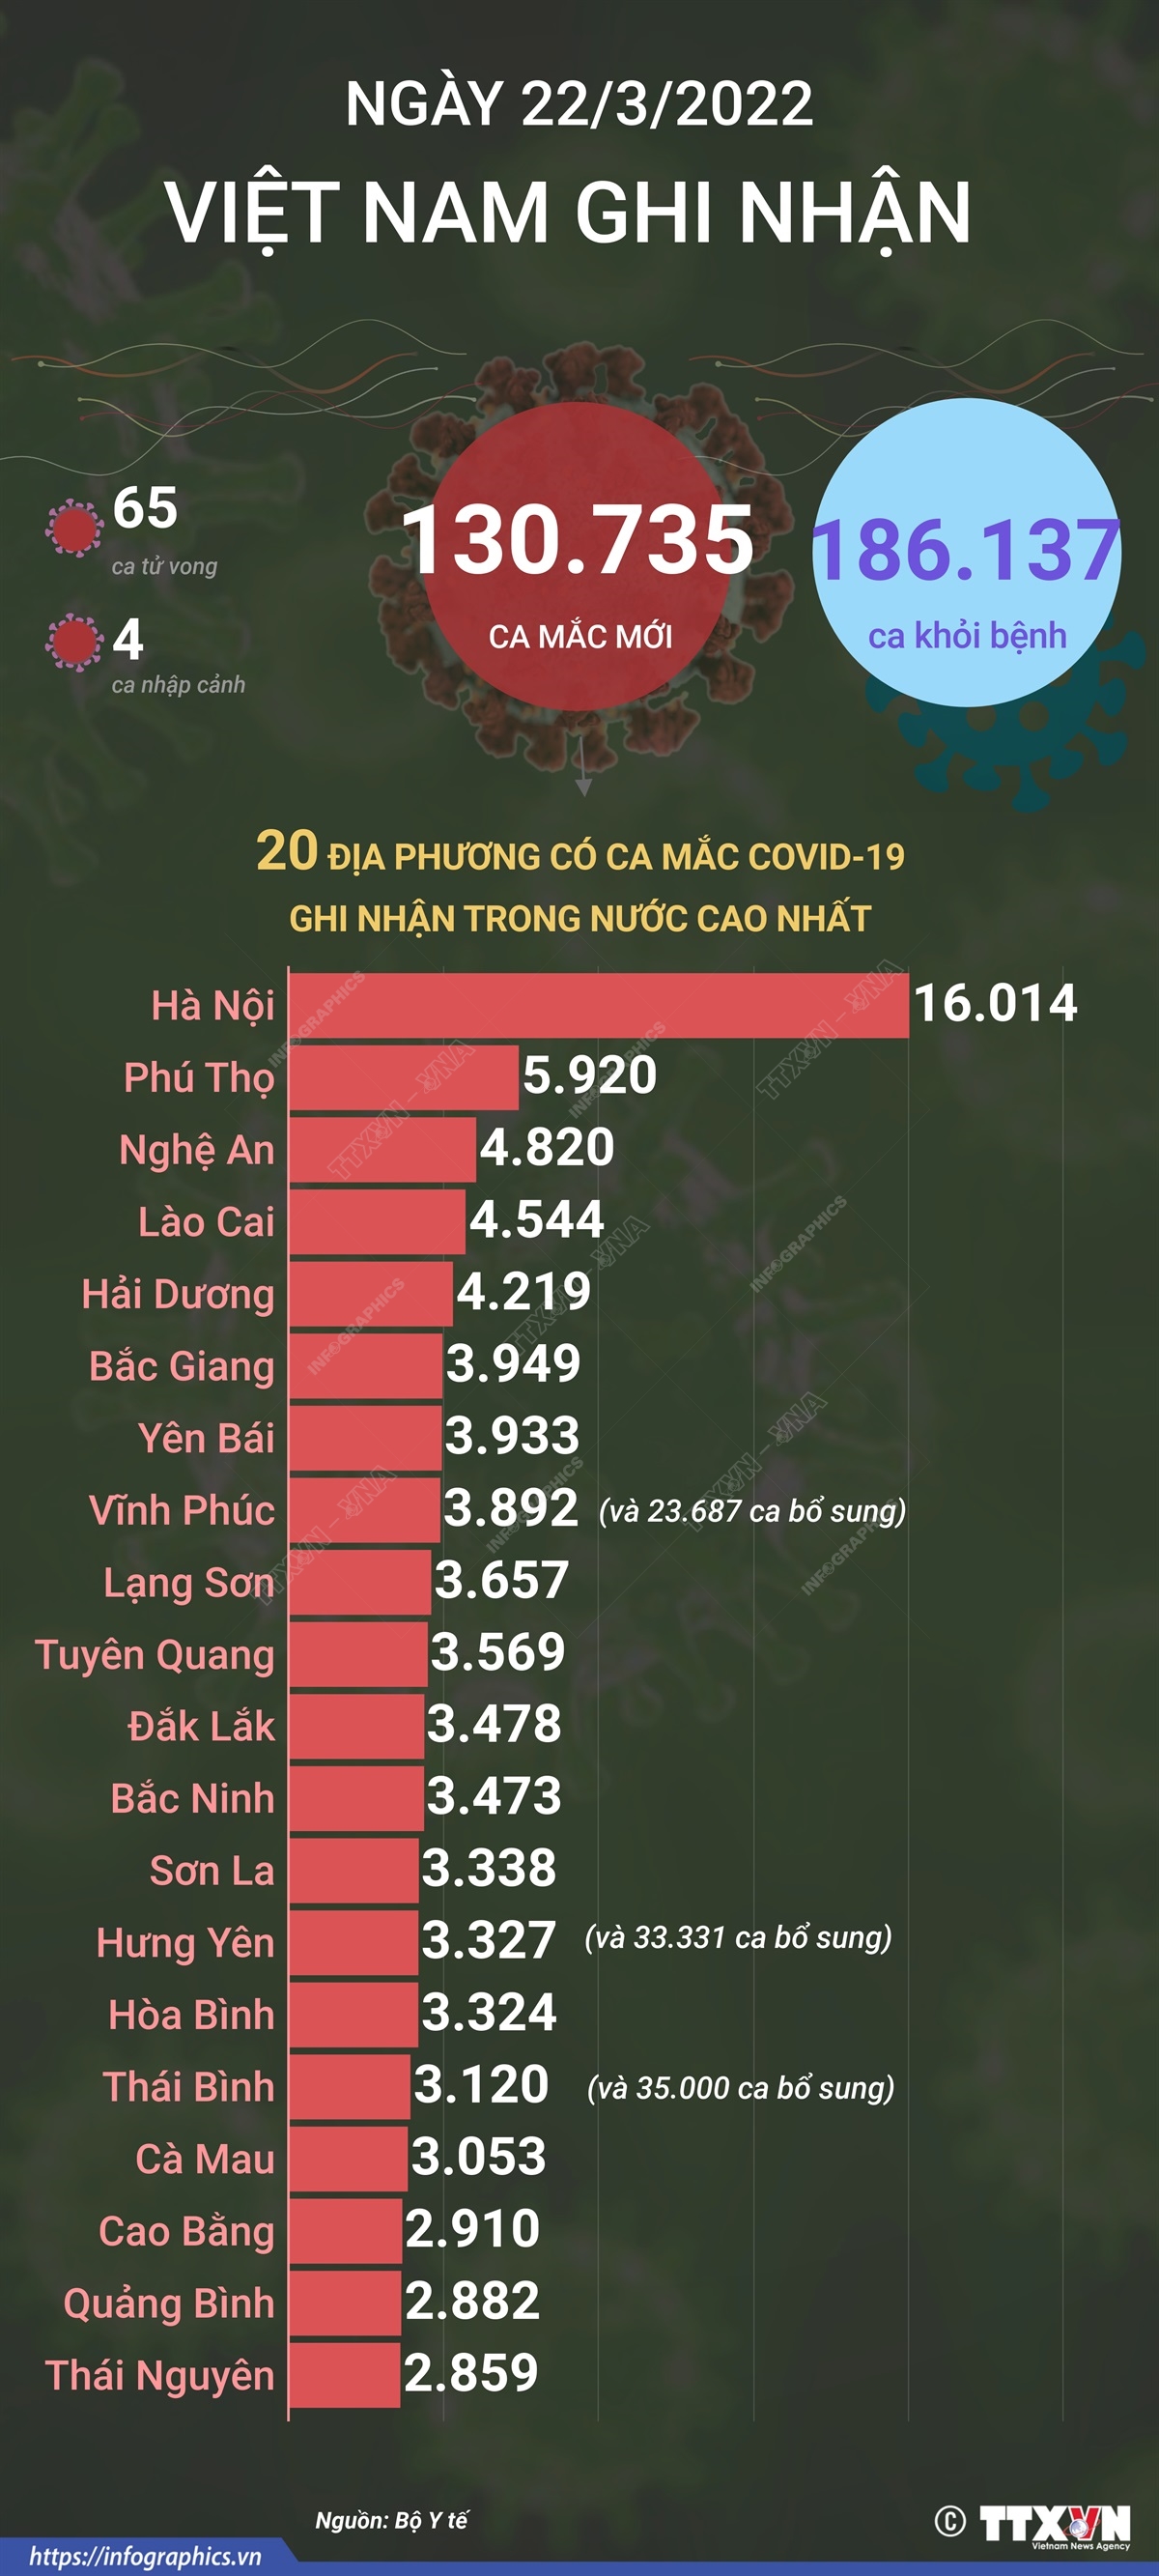 Ngày 22/3/2022, Việt Nam ghi nhận 130.735 ca mắc mới và 65 ca tử vong do COVID-19